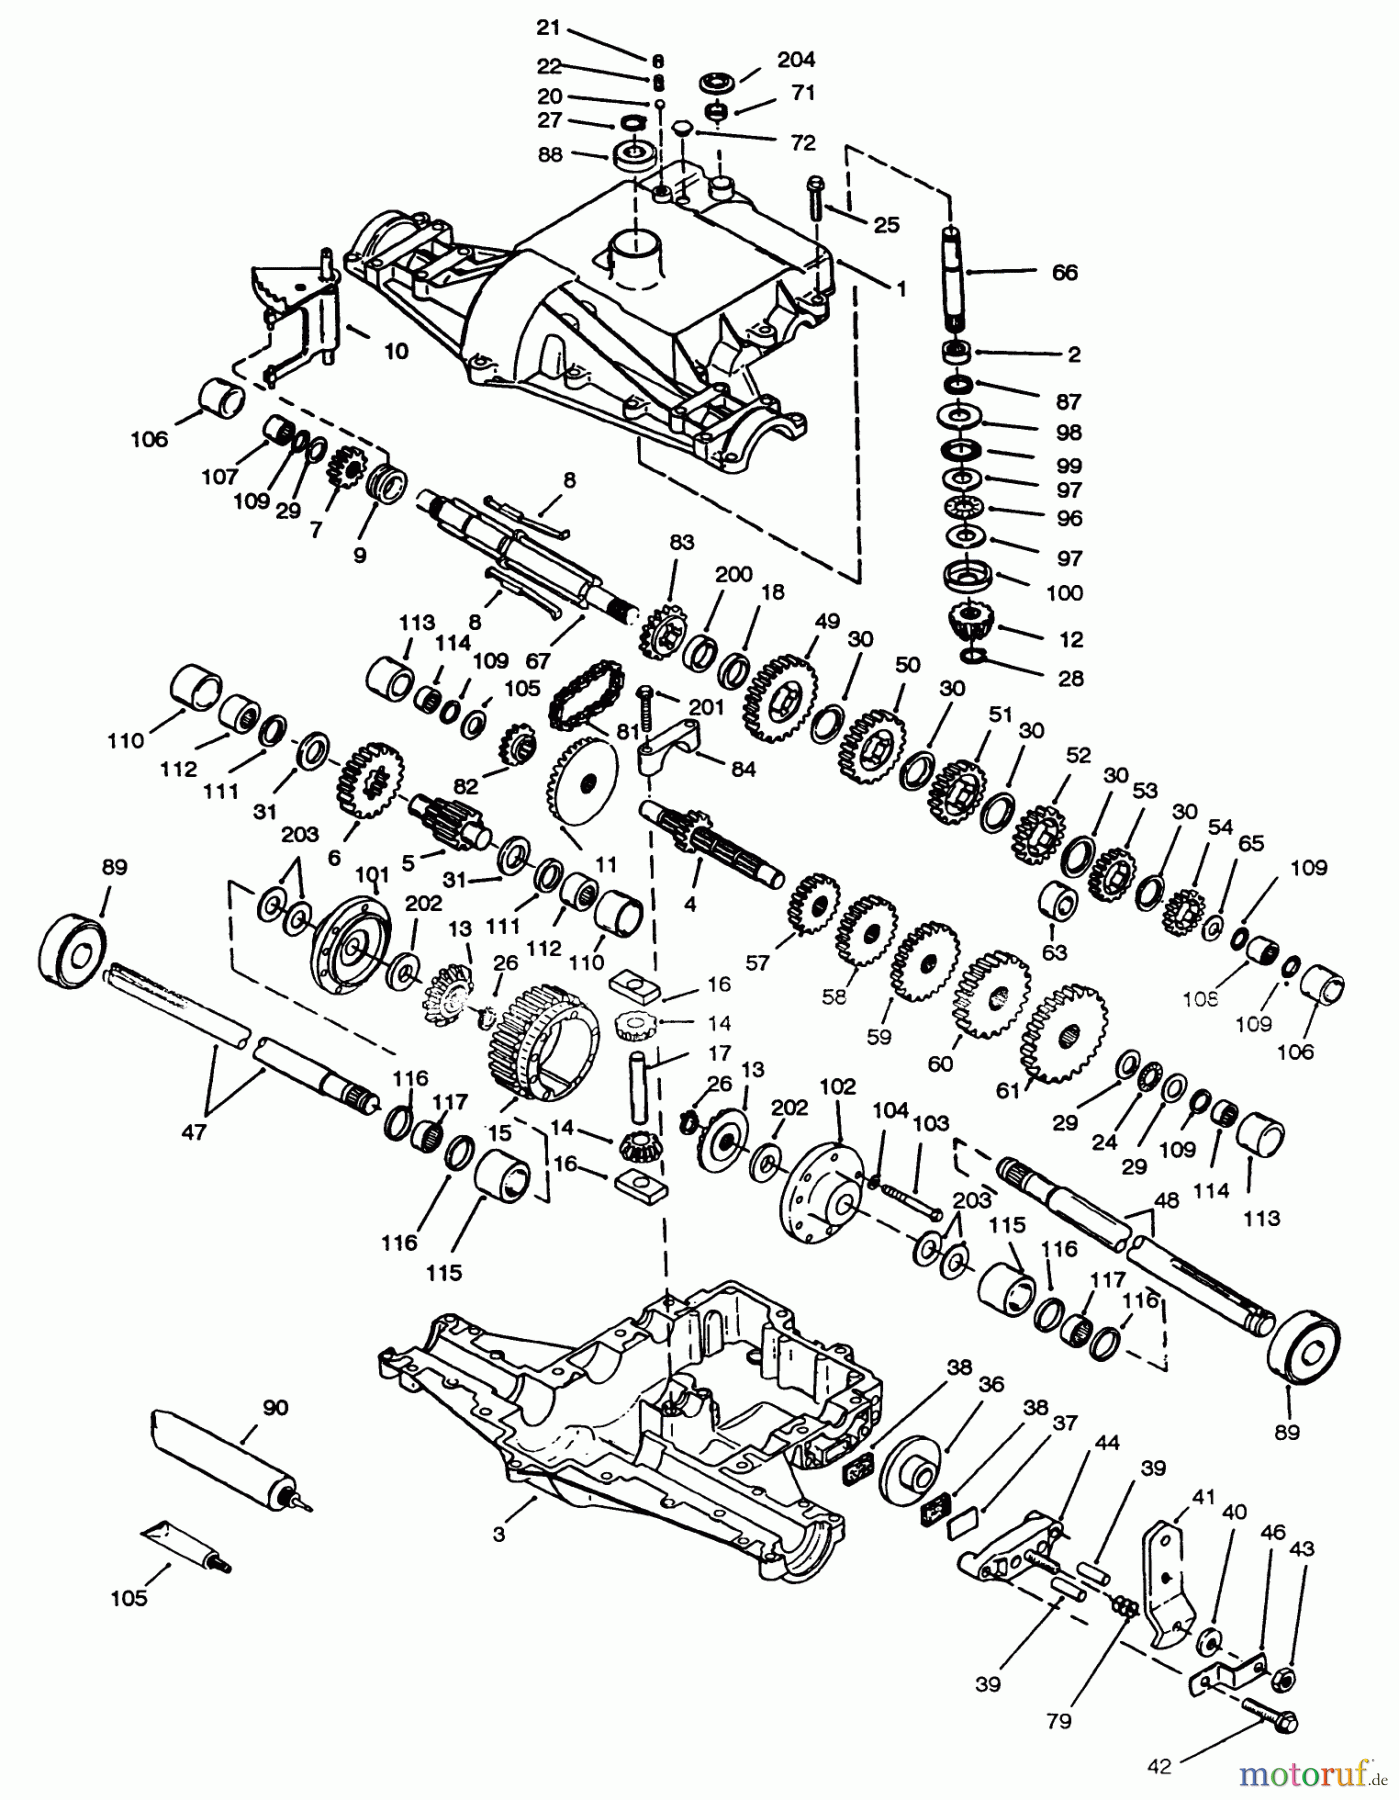  Toro Neu Mowers, Lawn & Garden Tractor Seite 1 72083 (266-H) - Toro 266-H Yard Tractor, 1994 (4900001-4999999) PEERLESS TRANSAXLE 820-024